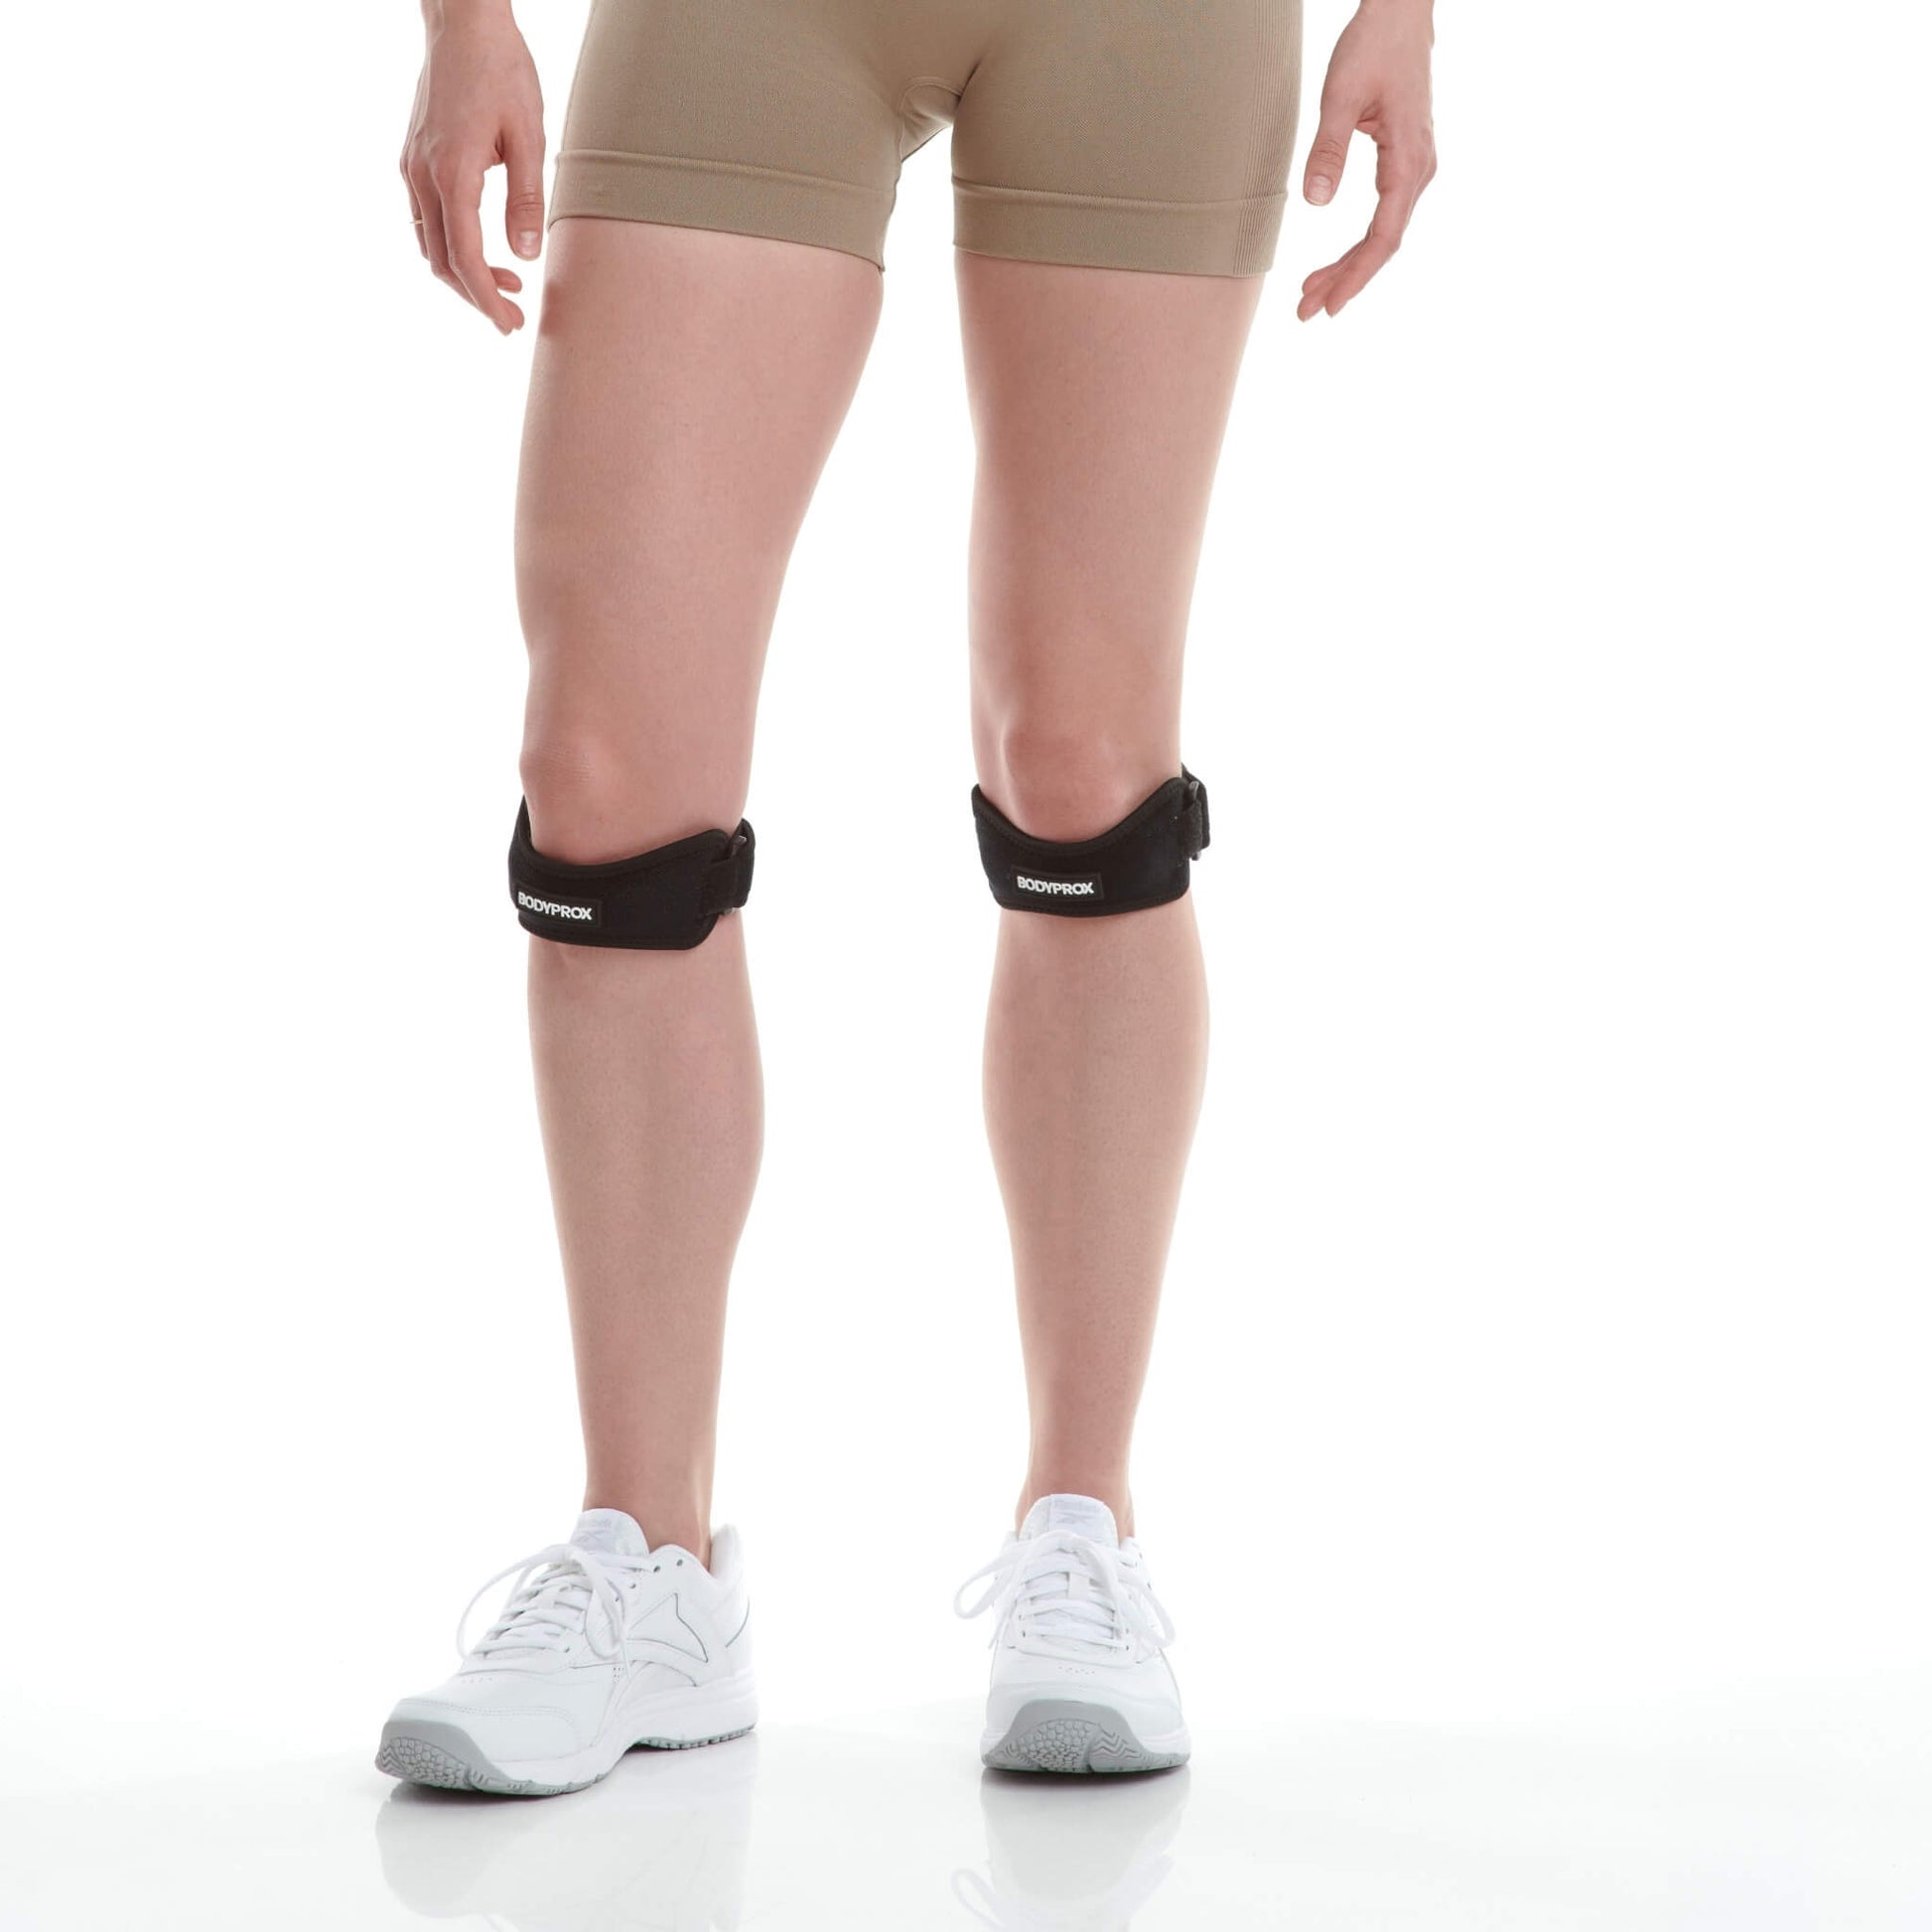 Bodyprox Sangle de tendon rotulien, attelle de soutien pour soulager la  douleur au genou – BODYPROX